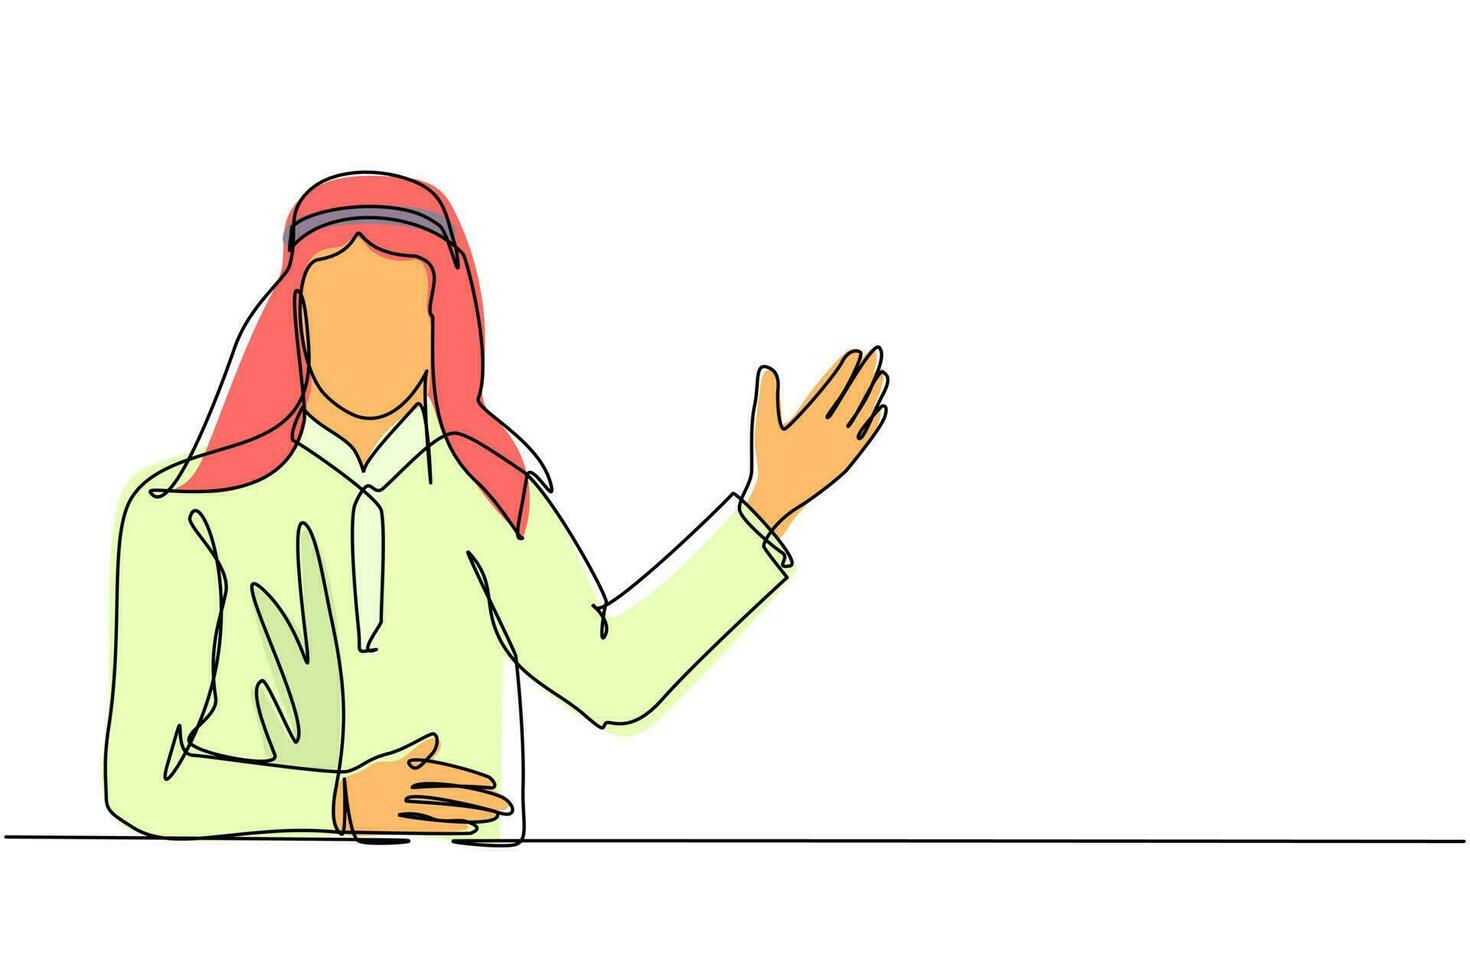 einzelne durchgehende strichzeichnung arabischer mann in traditioneller kleidung, der etwas präsentiert. junger geschäftsmann, der etwas zeigt oder projekt vorstellt. eine linie zeichnen grafikdesign-vektorillustration vektor